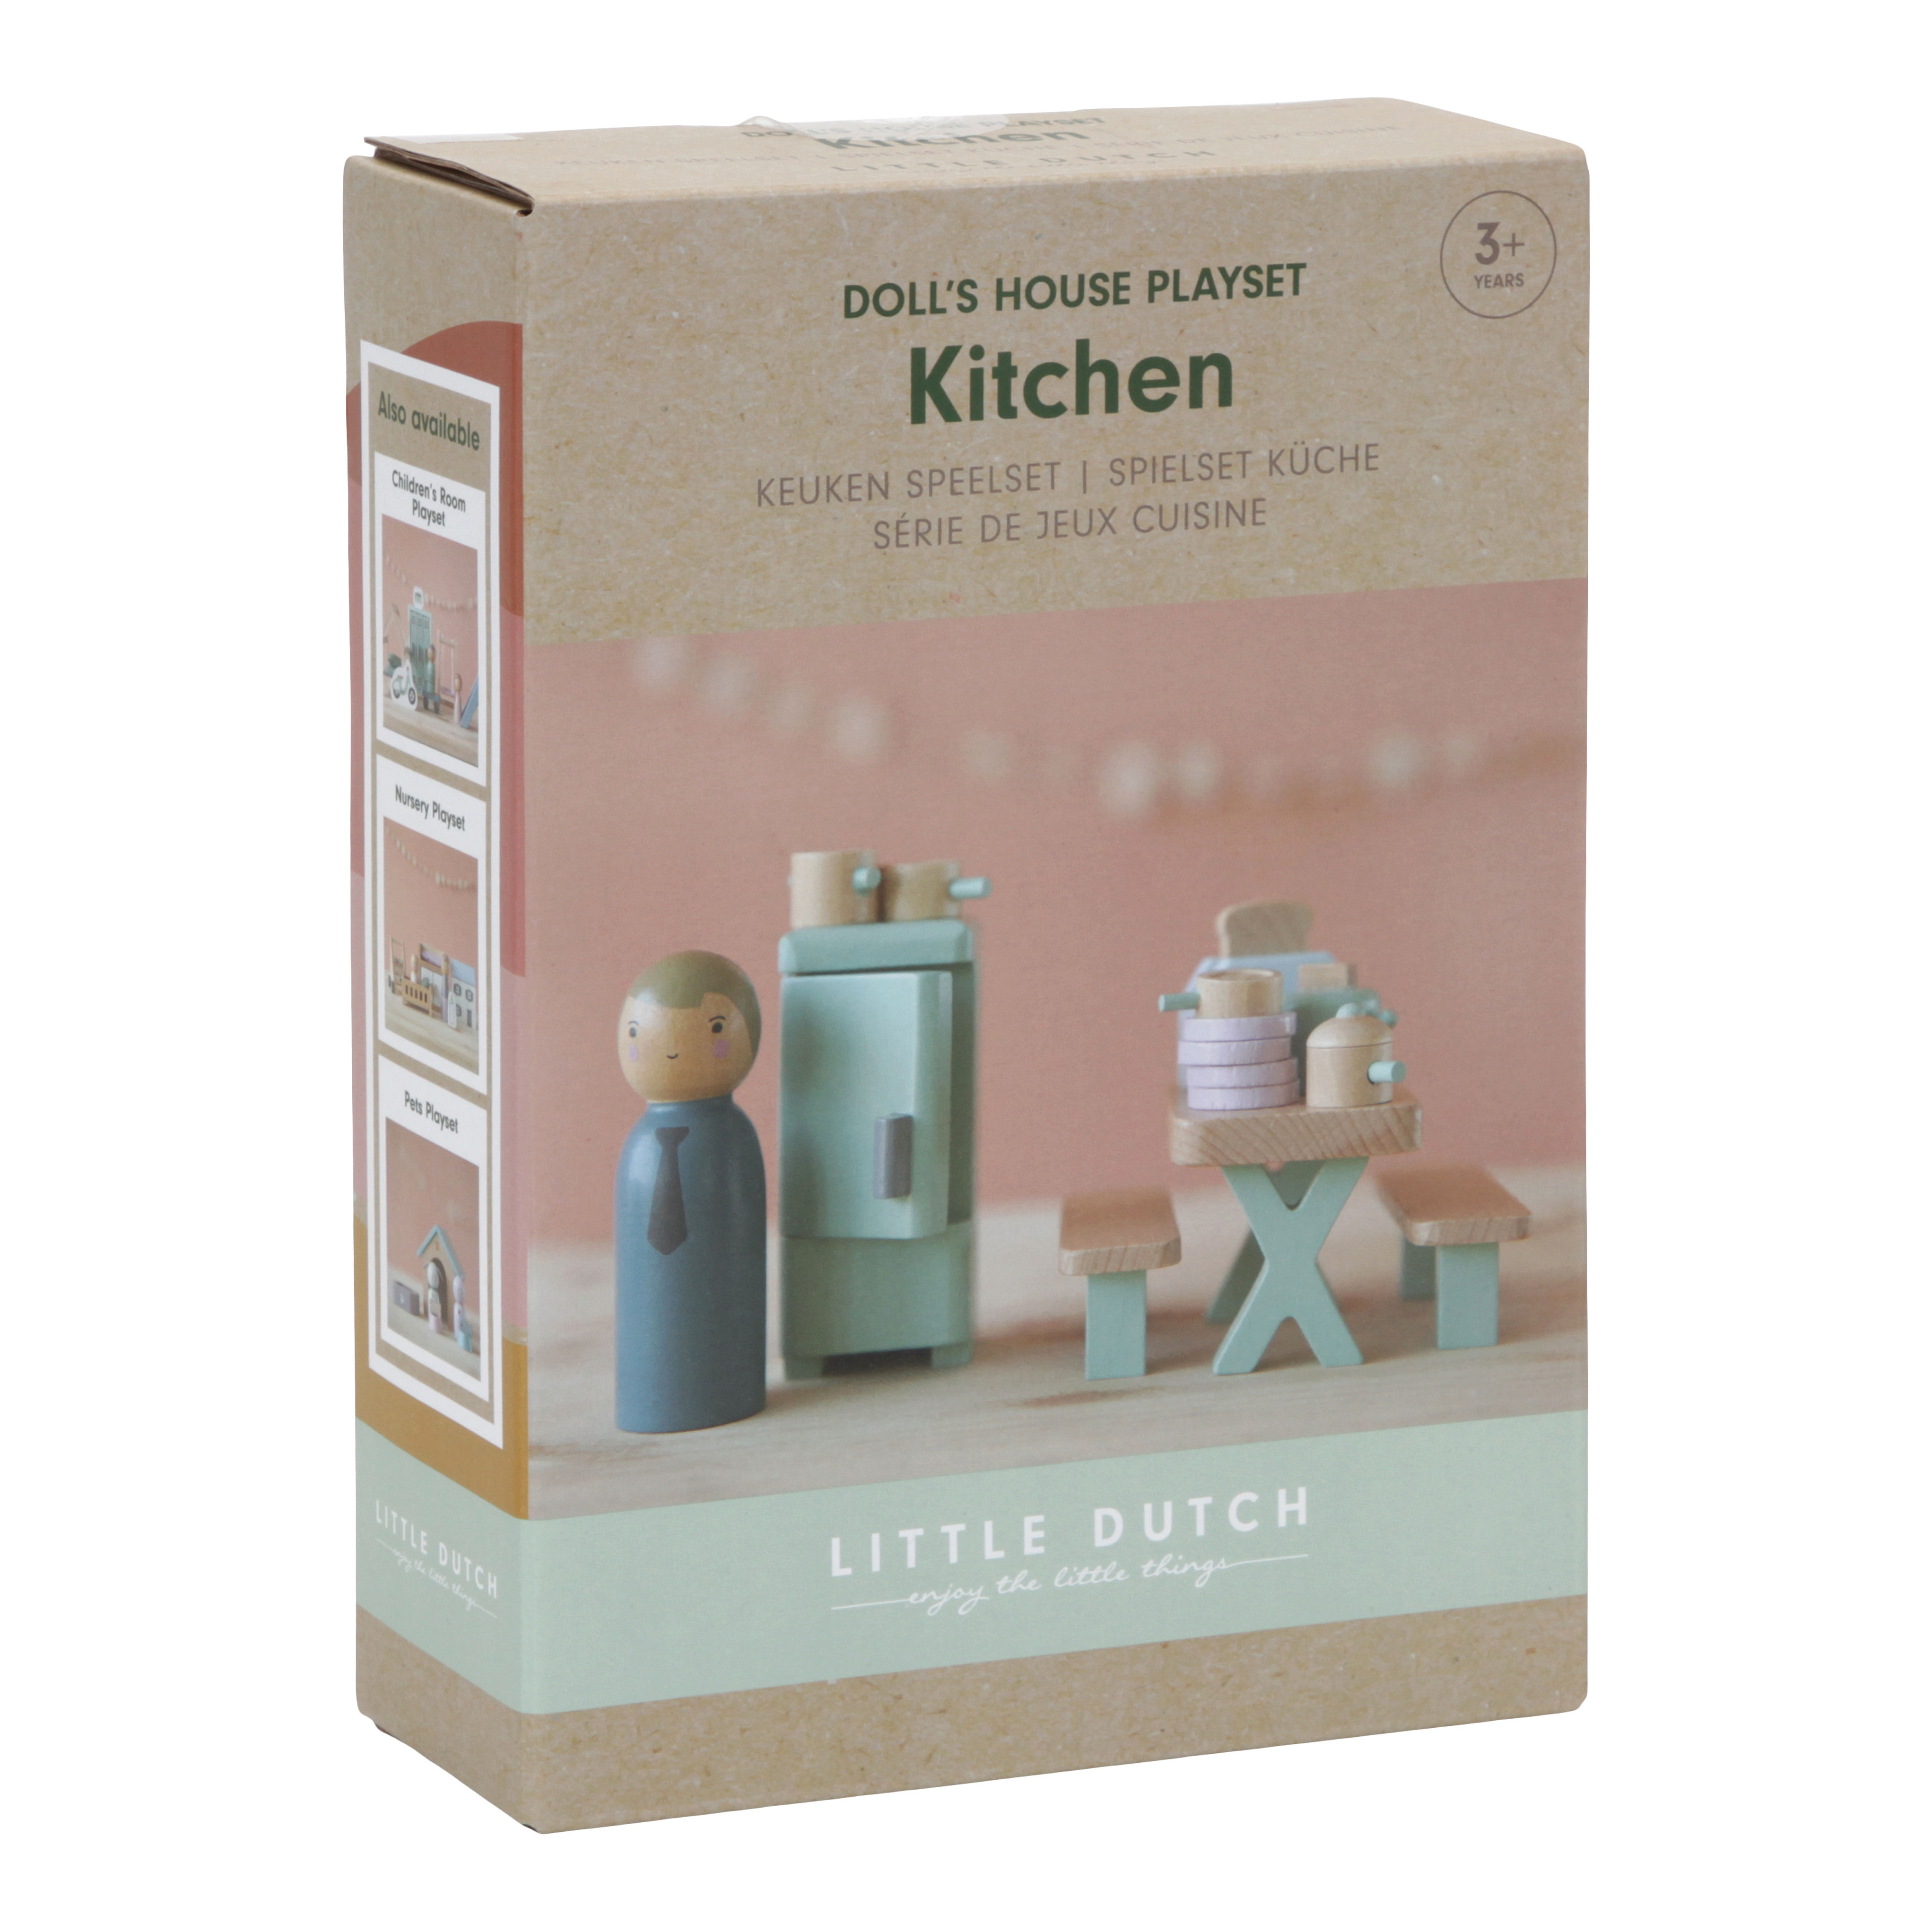 Little Dutch Dolls House Playset Kitchen